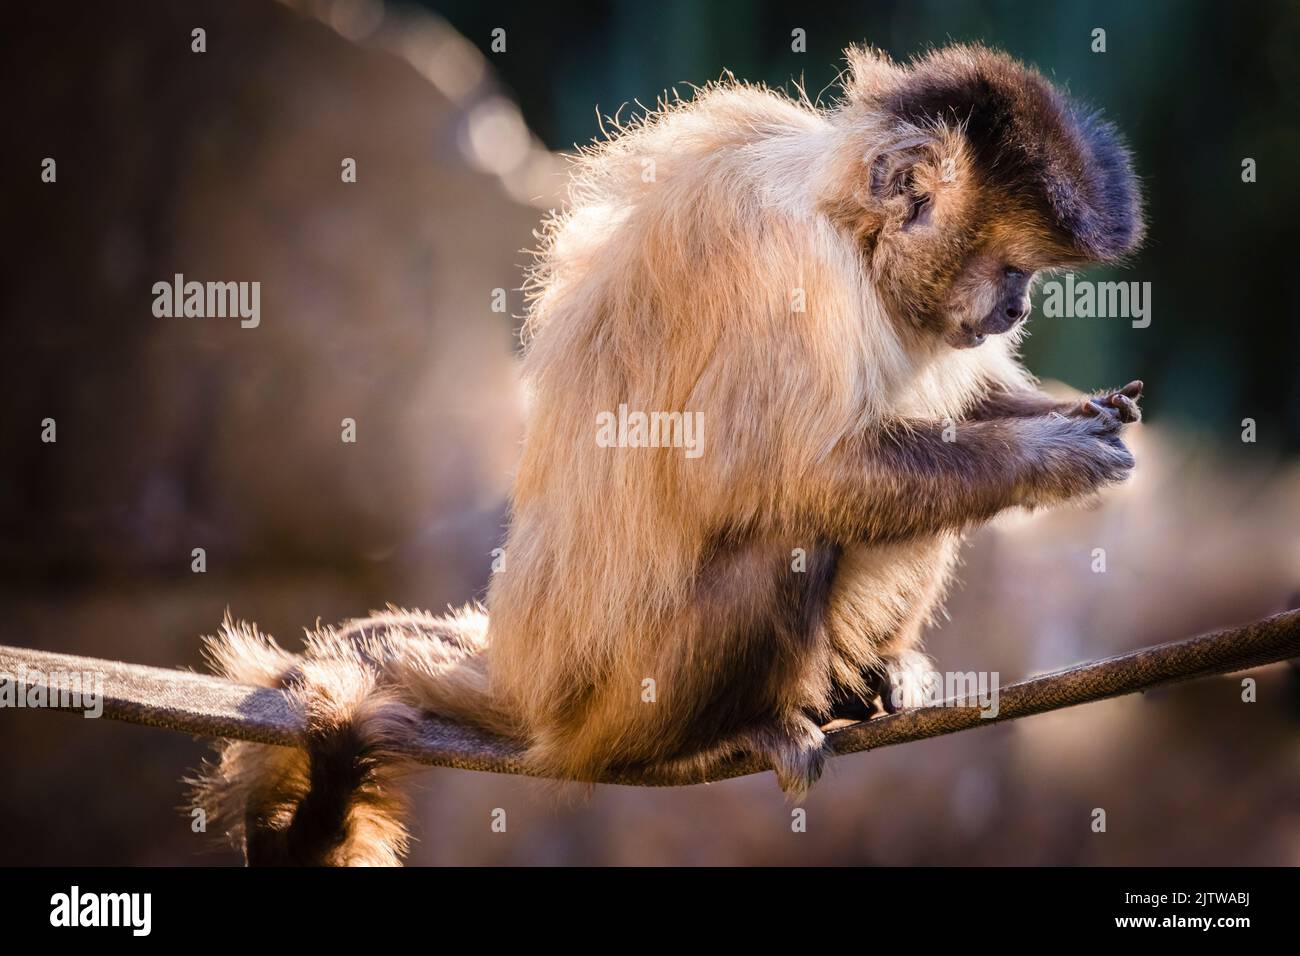 Scimmia sedersi a guardare la sua midia sociale sul cellulare, Pantanal, Brasile Foto Stock